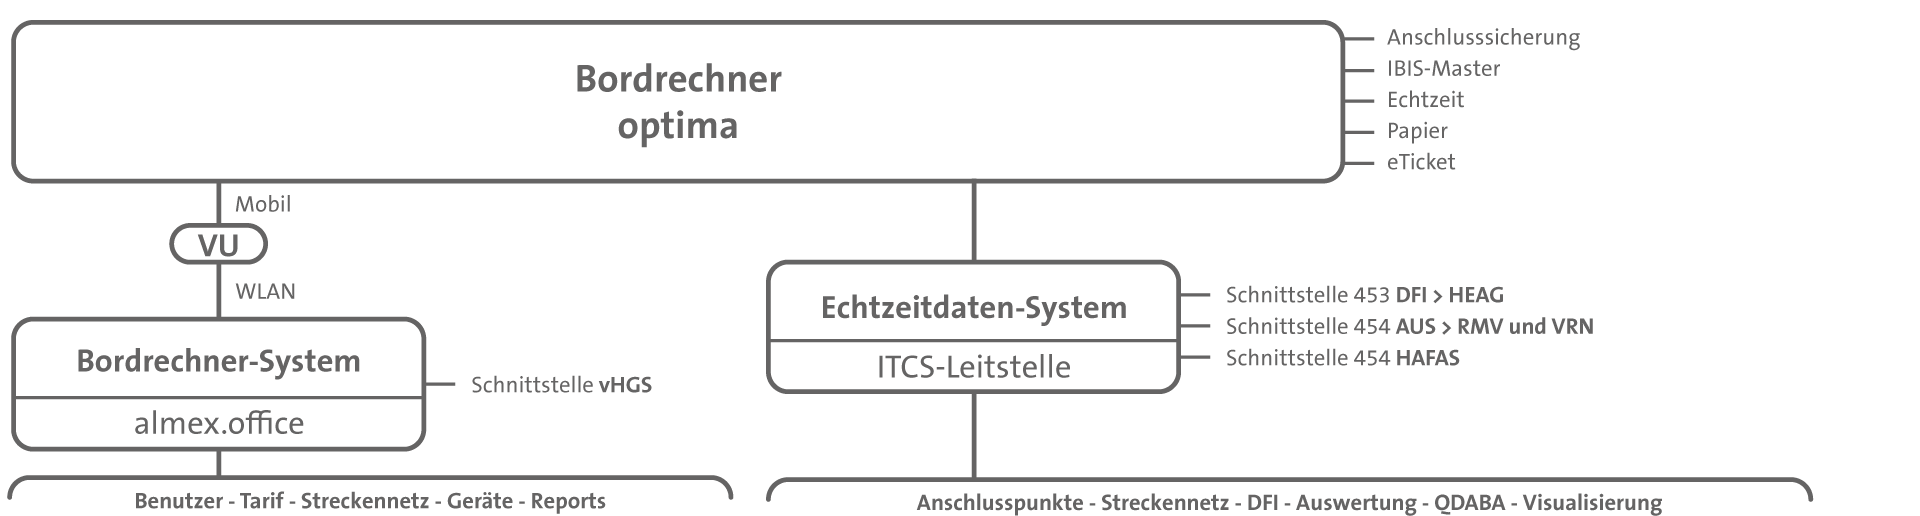 Bordrechner System